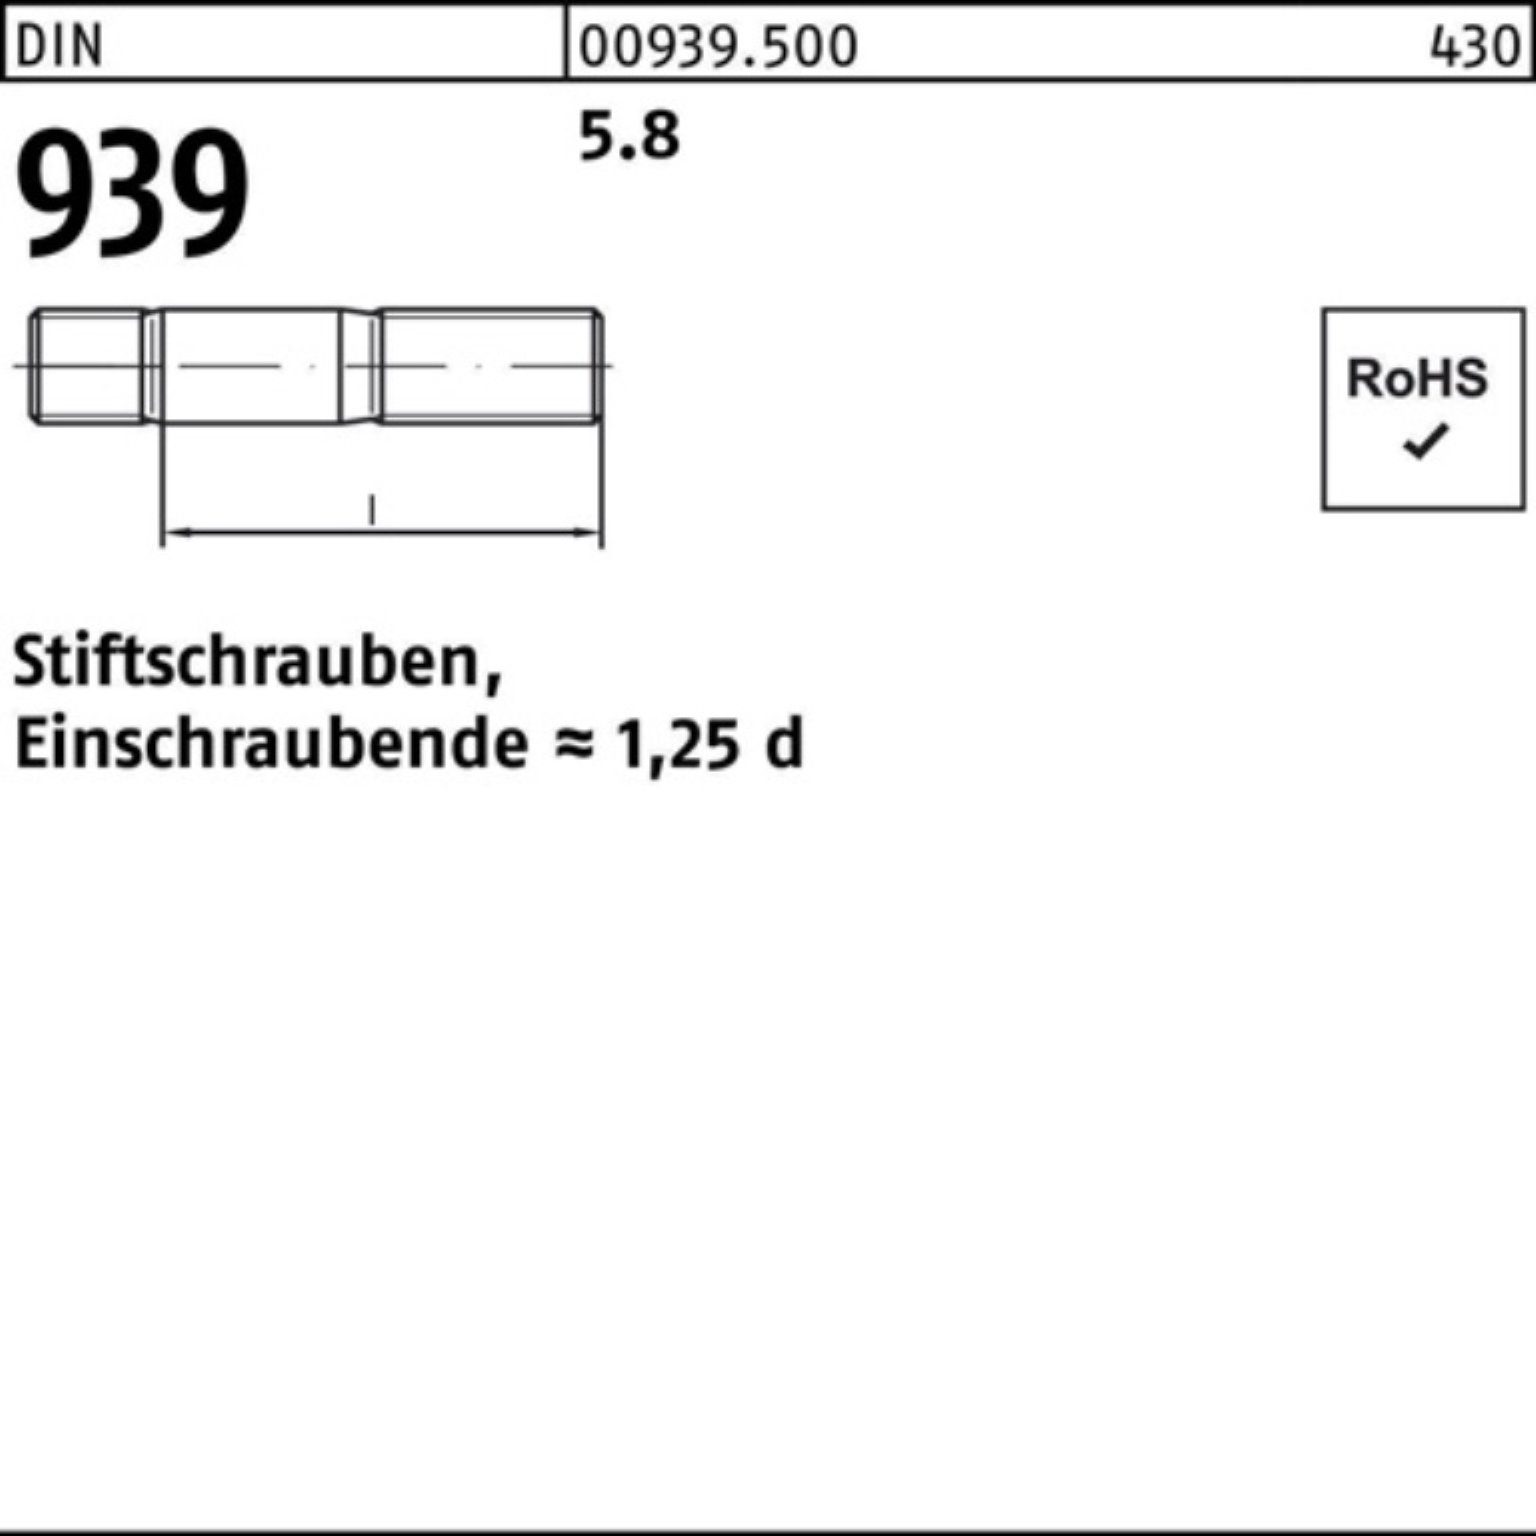 Reyher Stiftschraube M20x 939 Einschraubende=1,25d Stiftschraube DIN 10 100er Pack 5.8 120